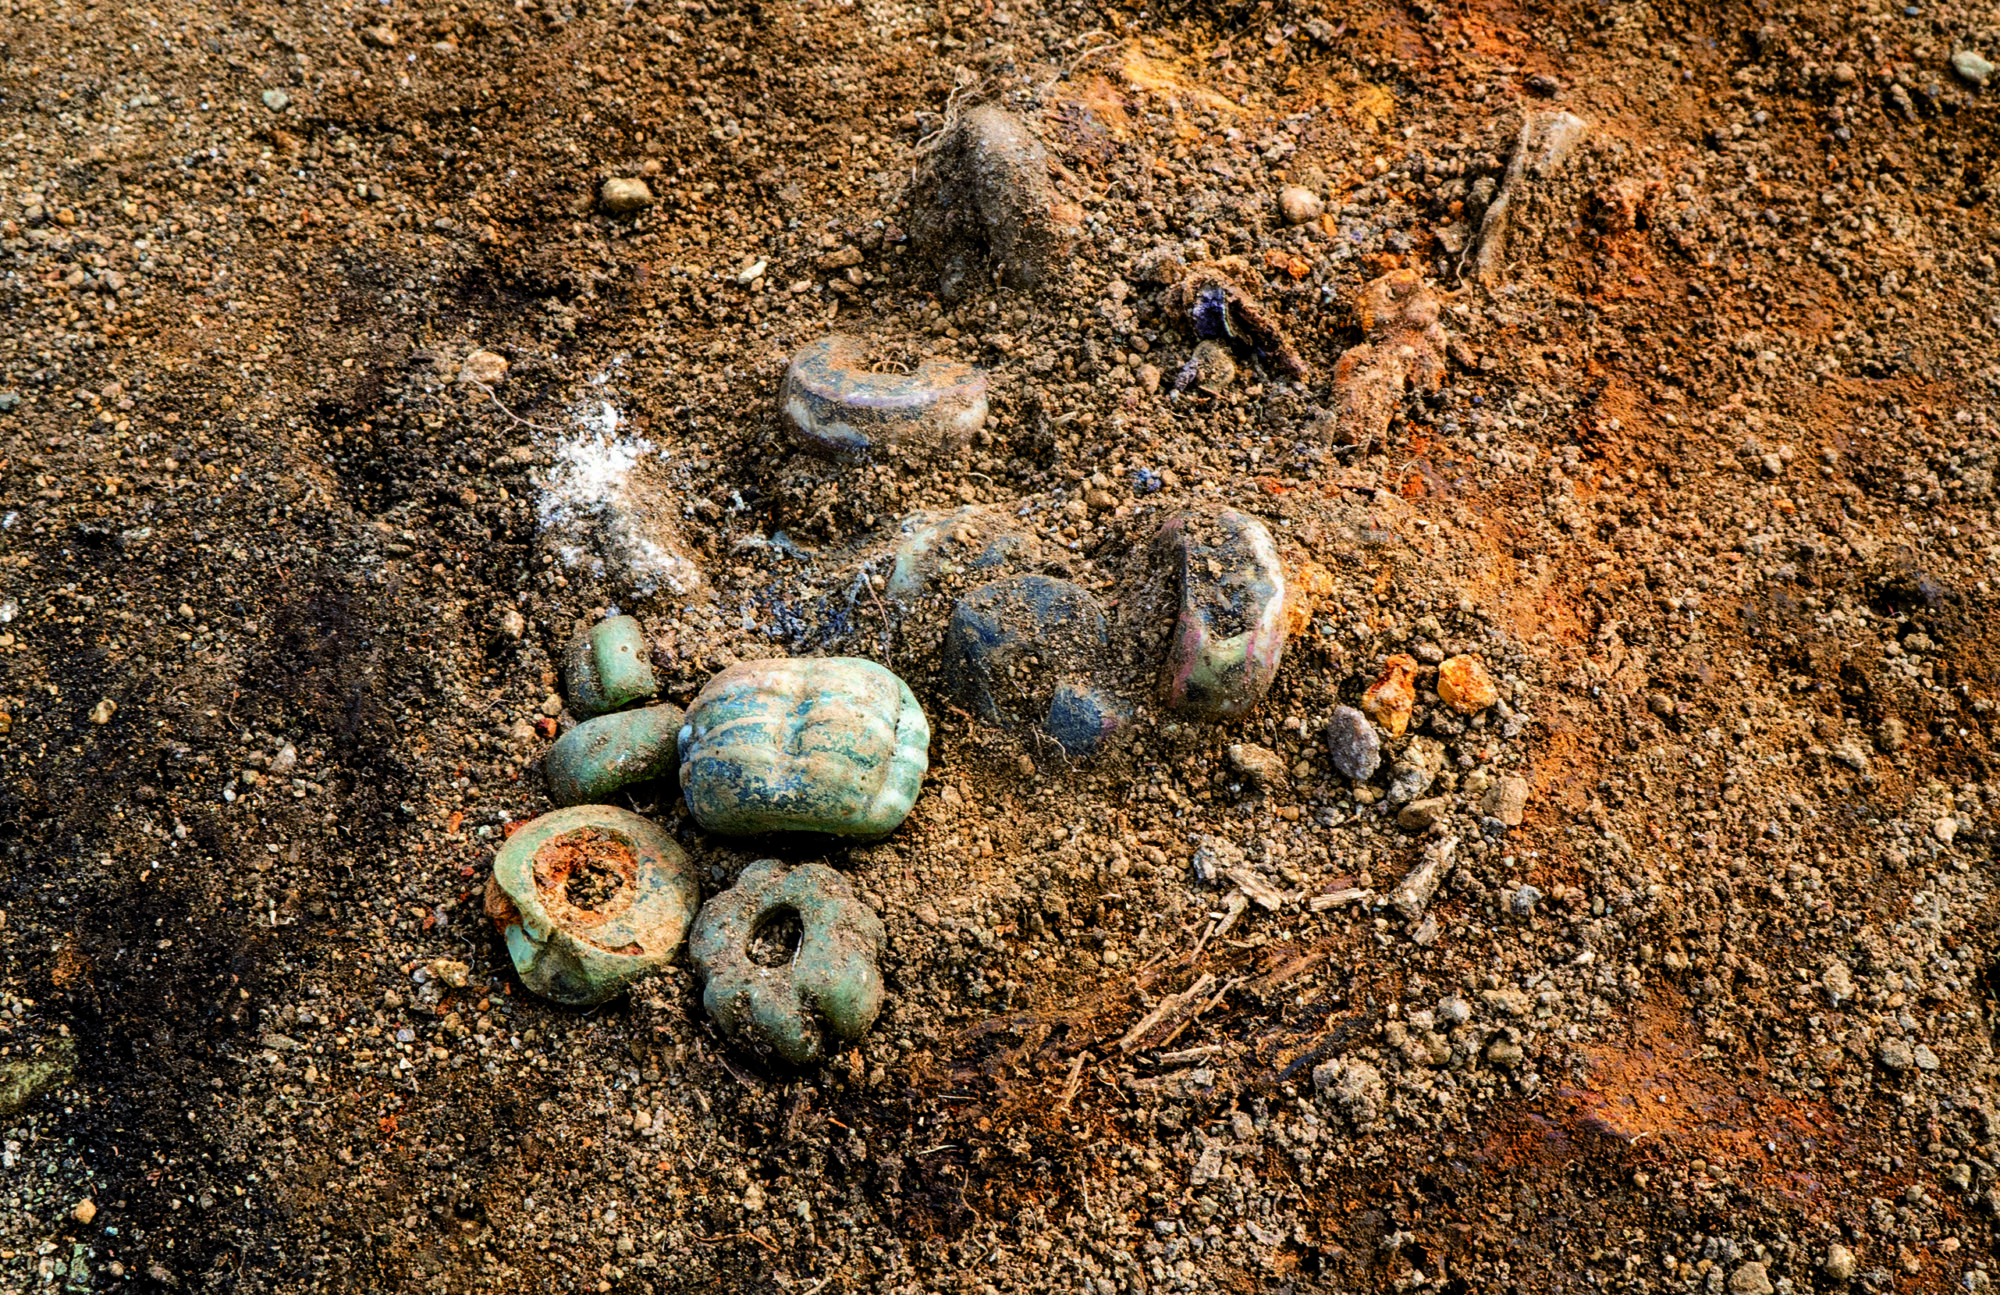 Slik lå glassperlene i kvinnegraven inntil dødehuset. Trerester rundt perlene viser at de har ligget i en liten trebolle eller lignende. Foto Raymond Sauvage, NTNU Vitenskapsmuseet